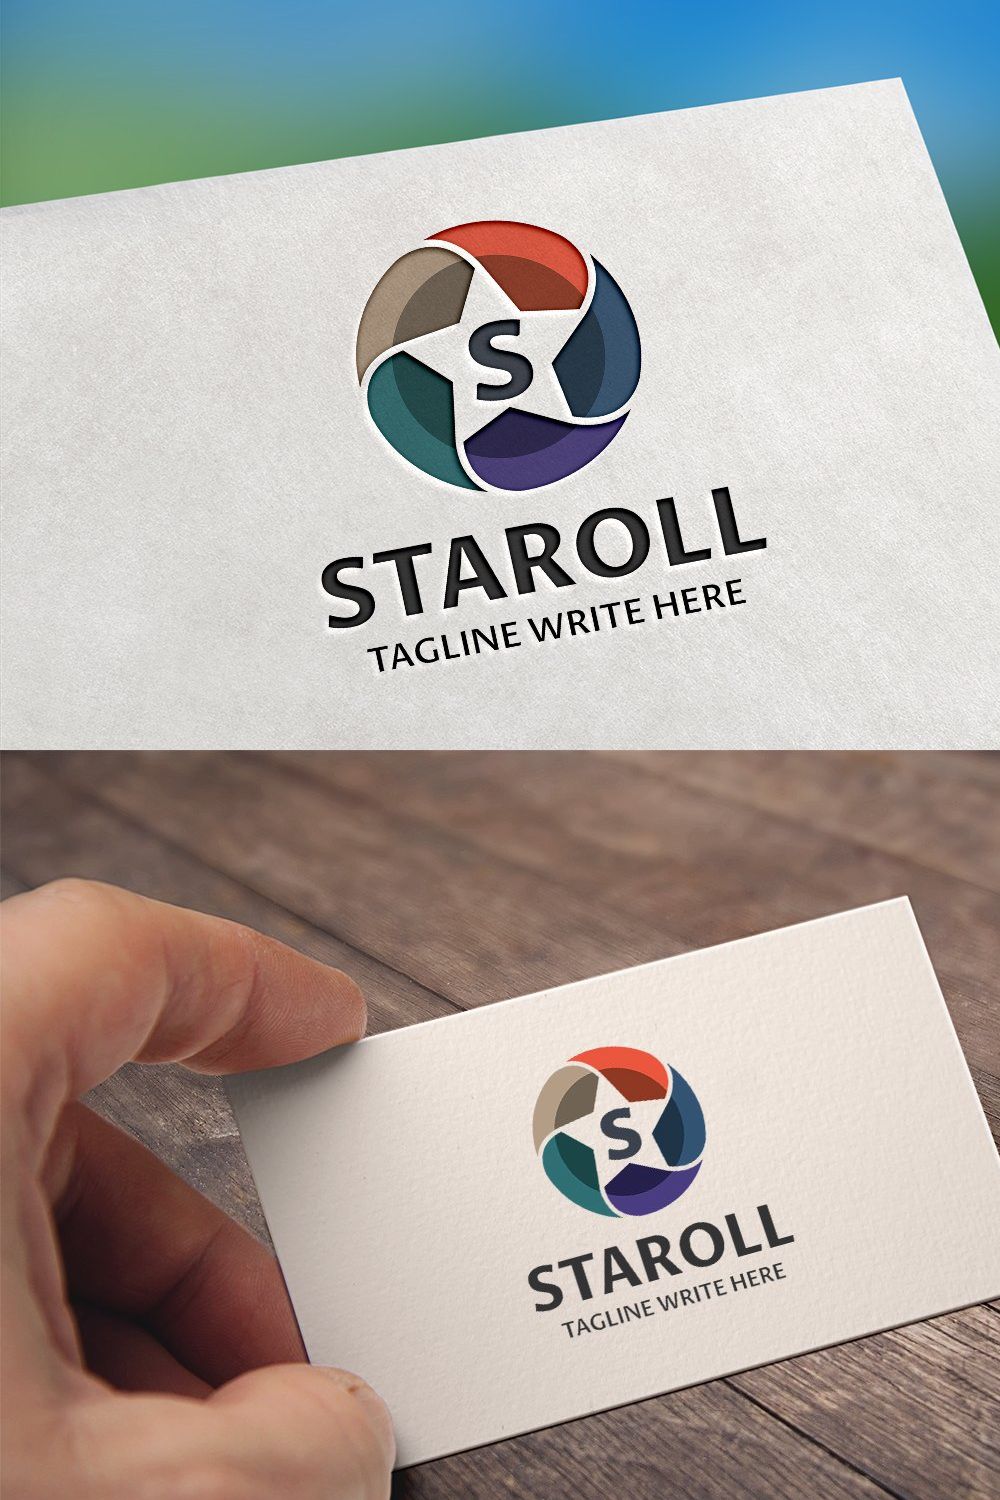 Staroll S Letter Logo pinterest preview image.